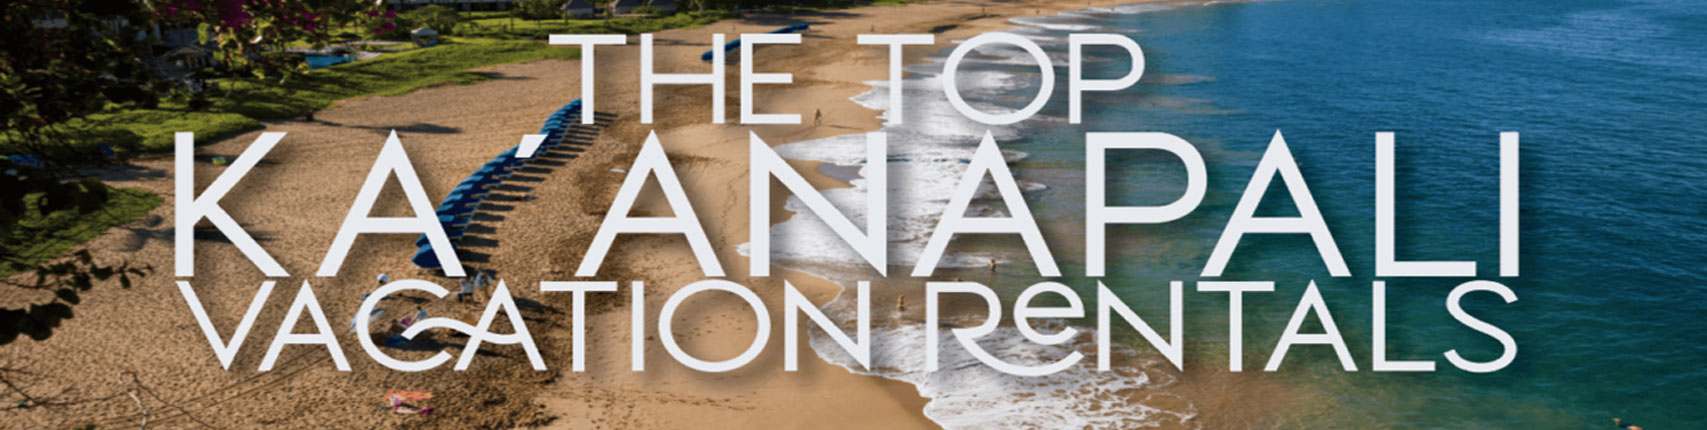 Top 5 Ka’anapali Vacation Rentals